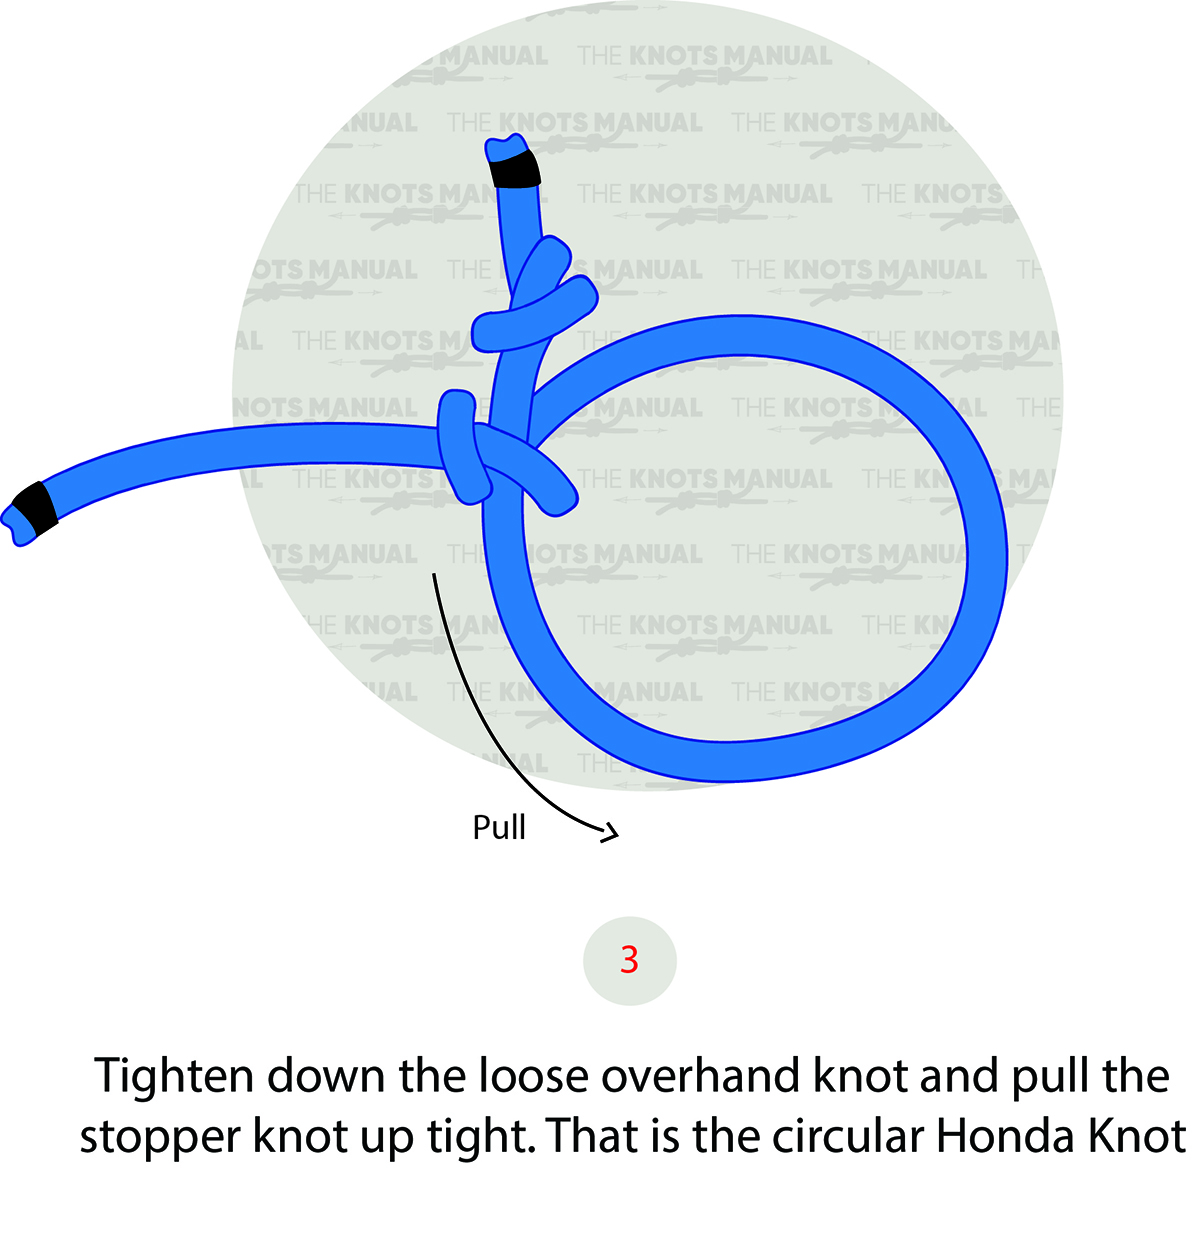 Honda Knot Step 3